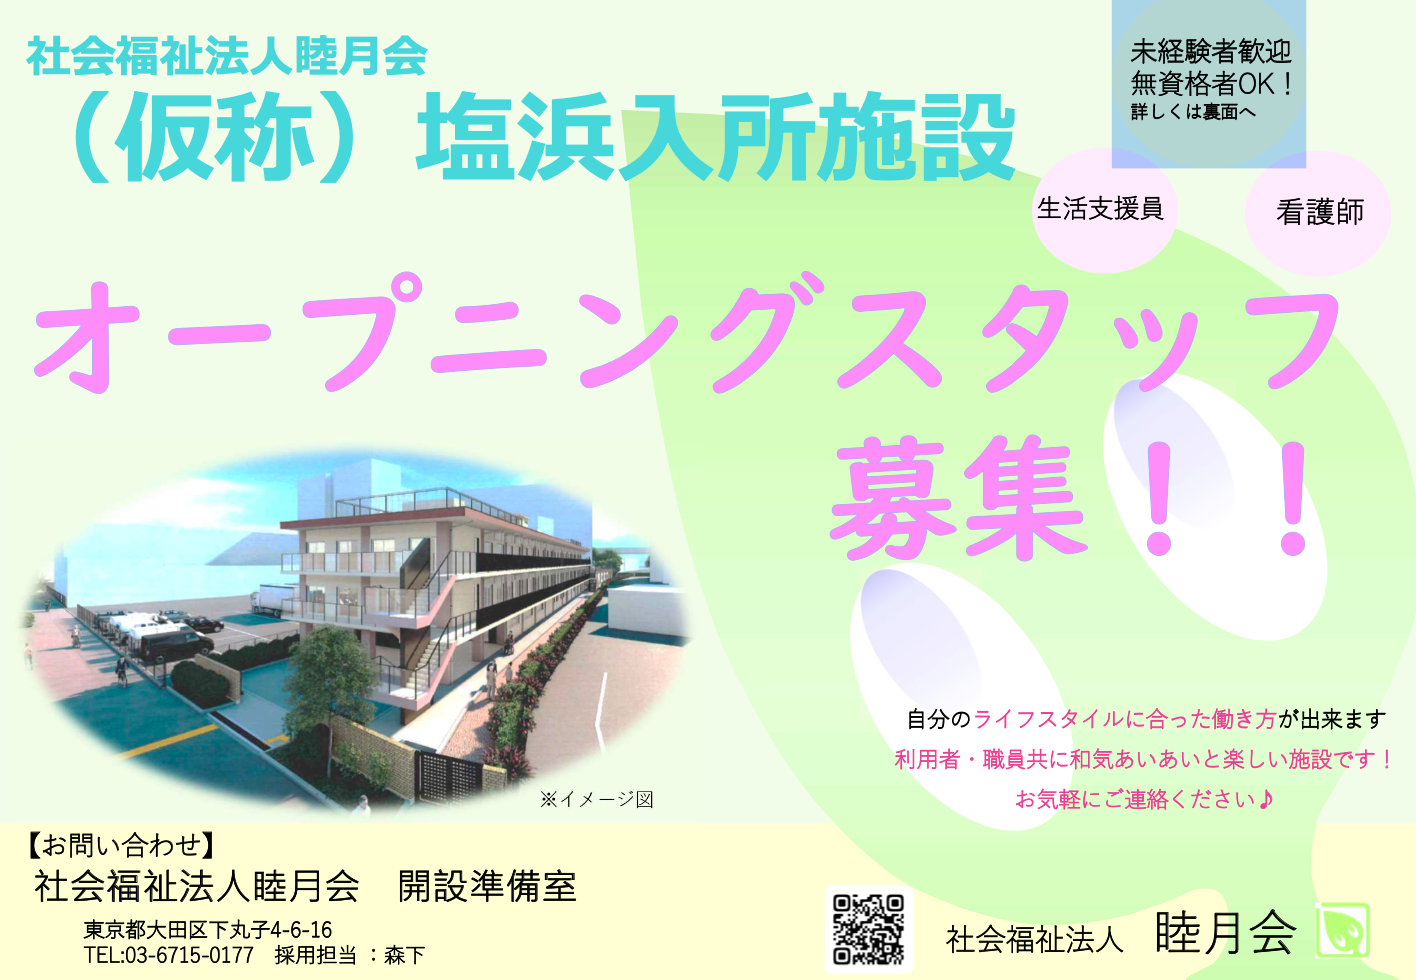 記事 2023年4月OPEN！(仮称)『江東区入所施設』オープニングスタッフを募集します！!のアイキャッチ画像